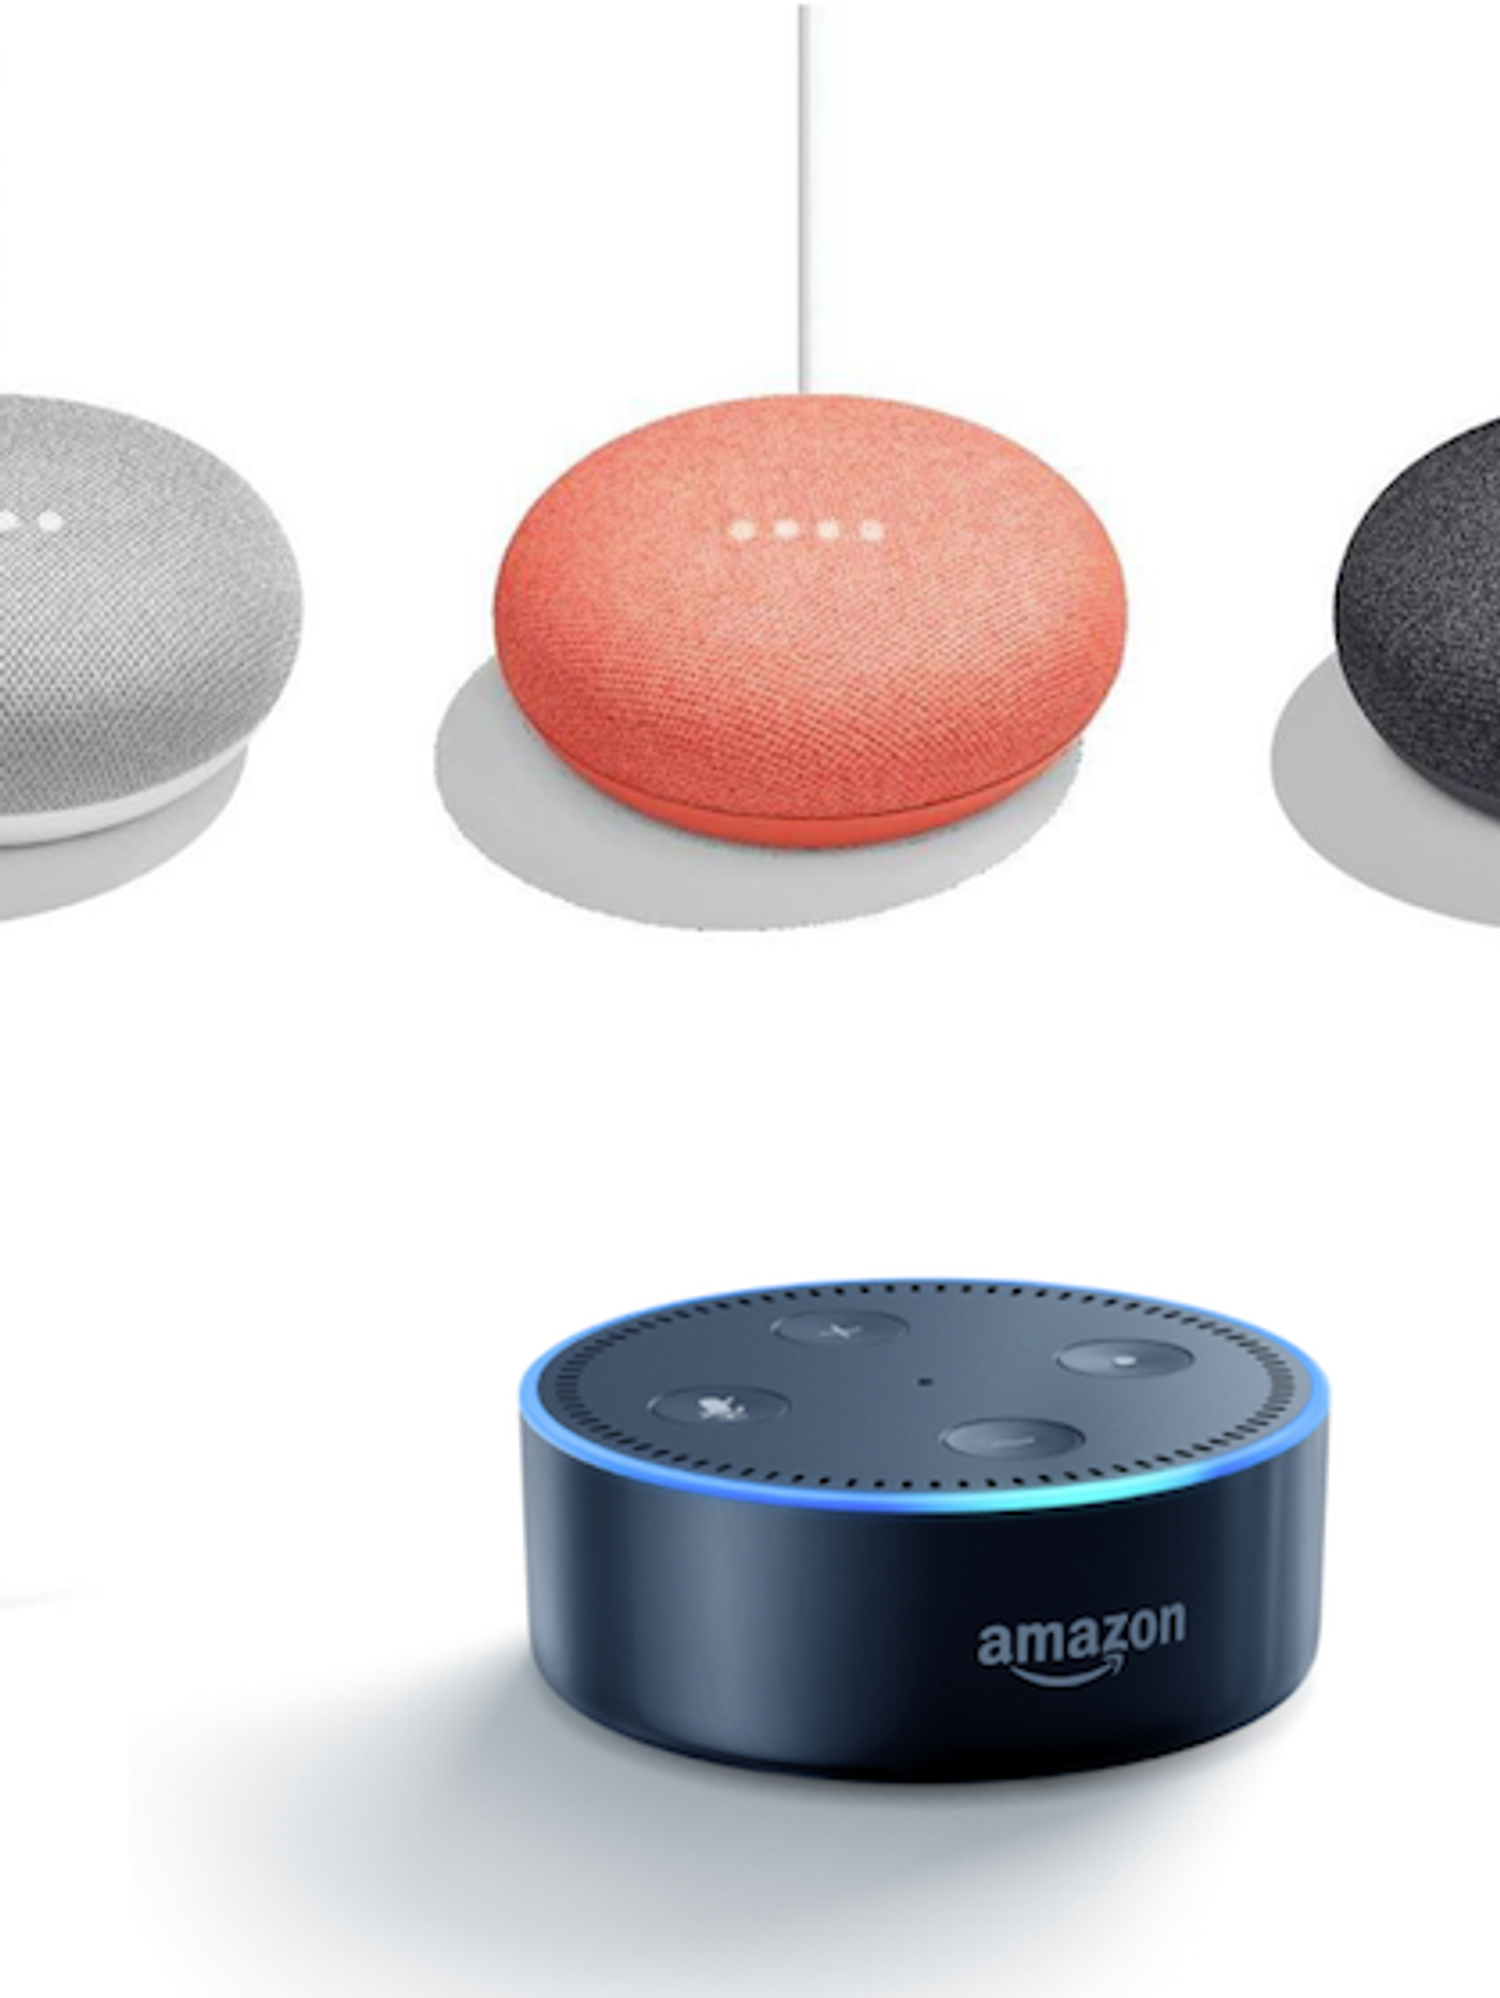 Amazon Echo vs Google Home: Which smart speaker is best? - Gearbrain